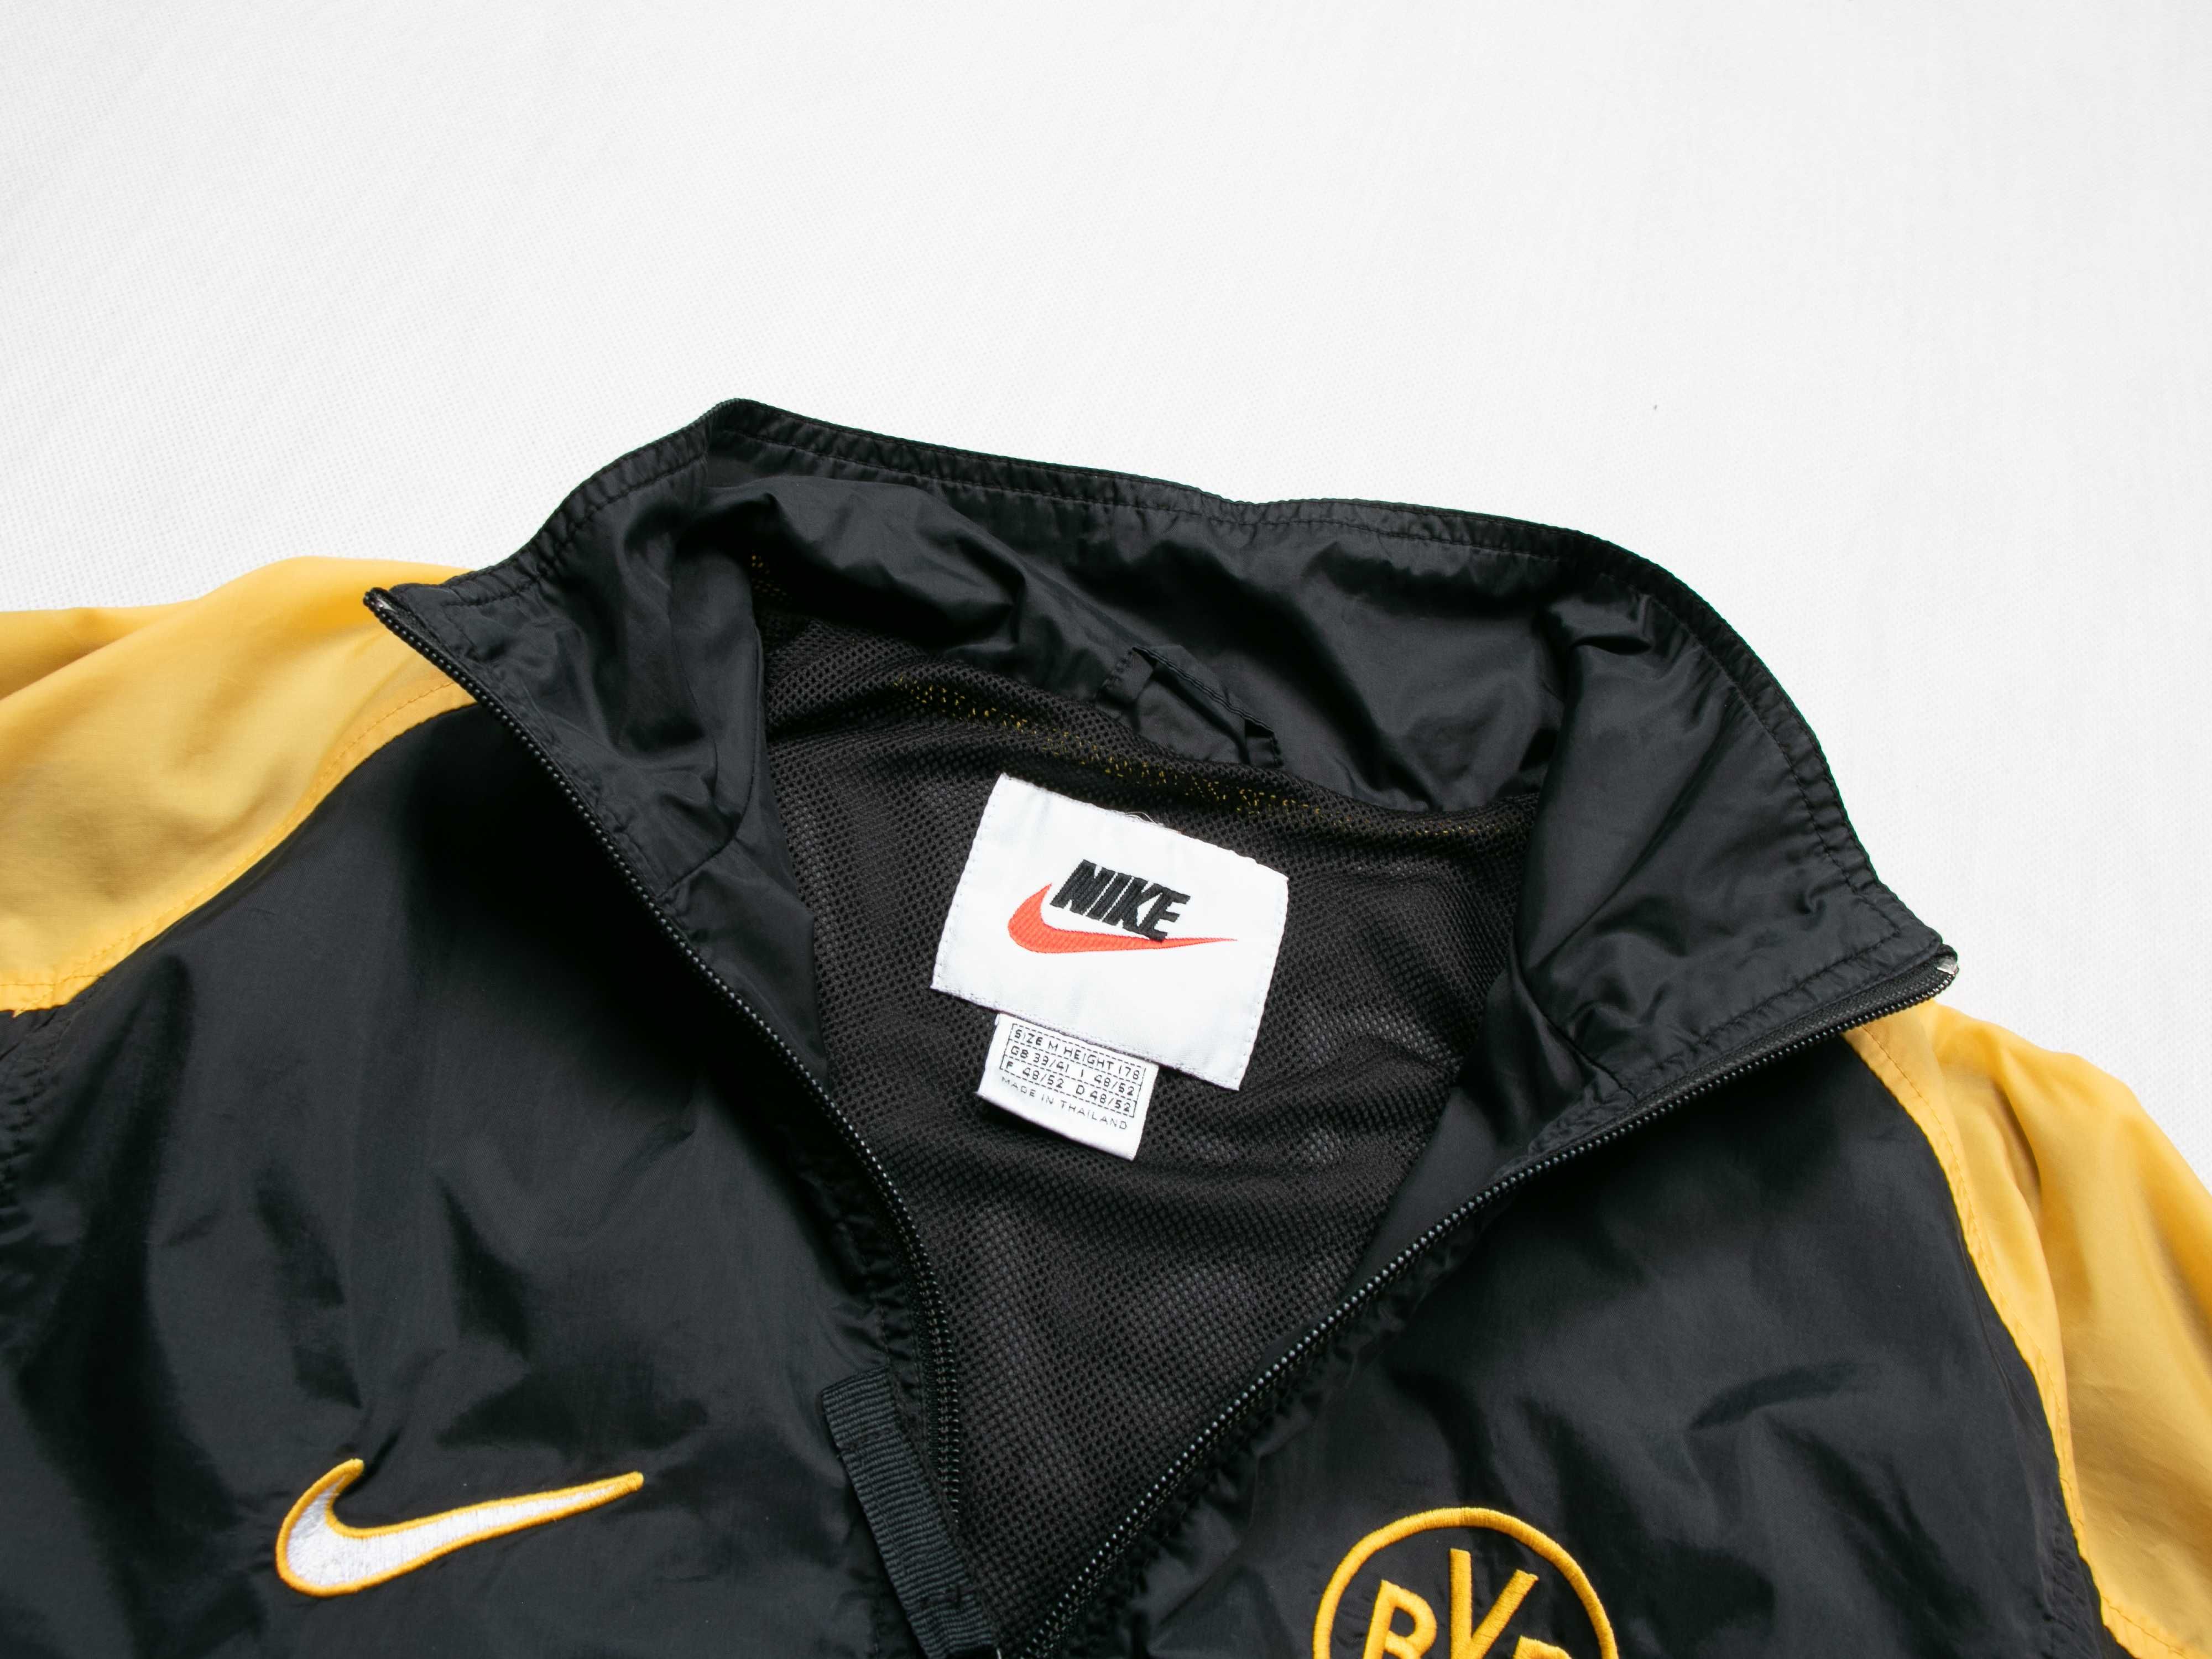 Kurtka wiatrówka Nike Borussia Dortmund 90's M windjacket